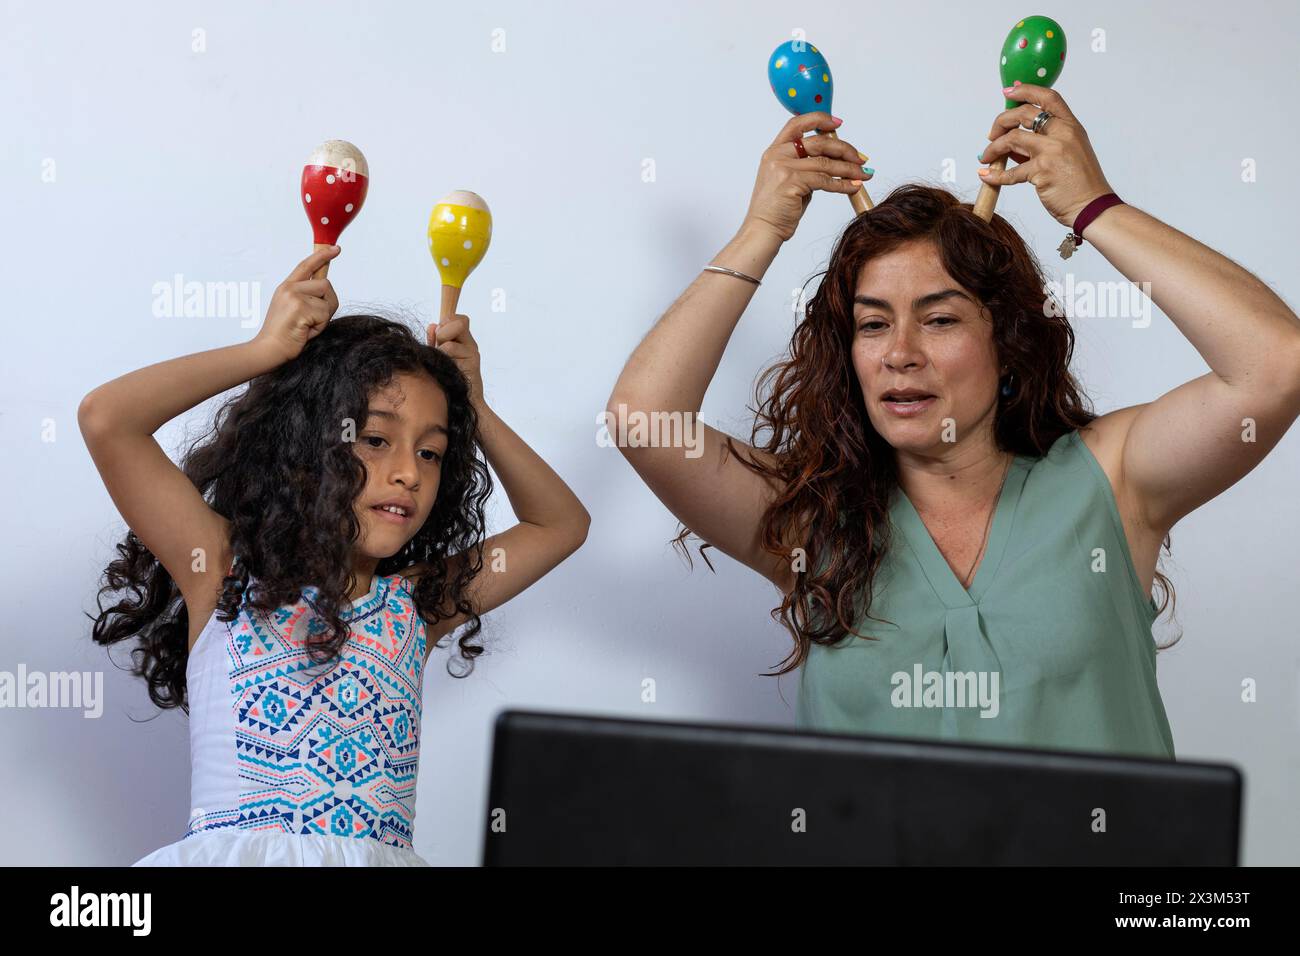 Lateinamerikanische Mutter und Tochter geben virtuellen Musikunterricht mit Schlaginstrumenten Stockfoto